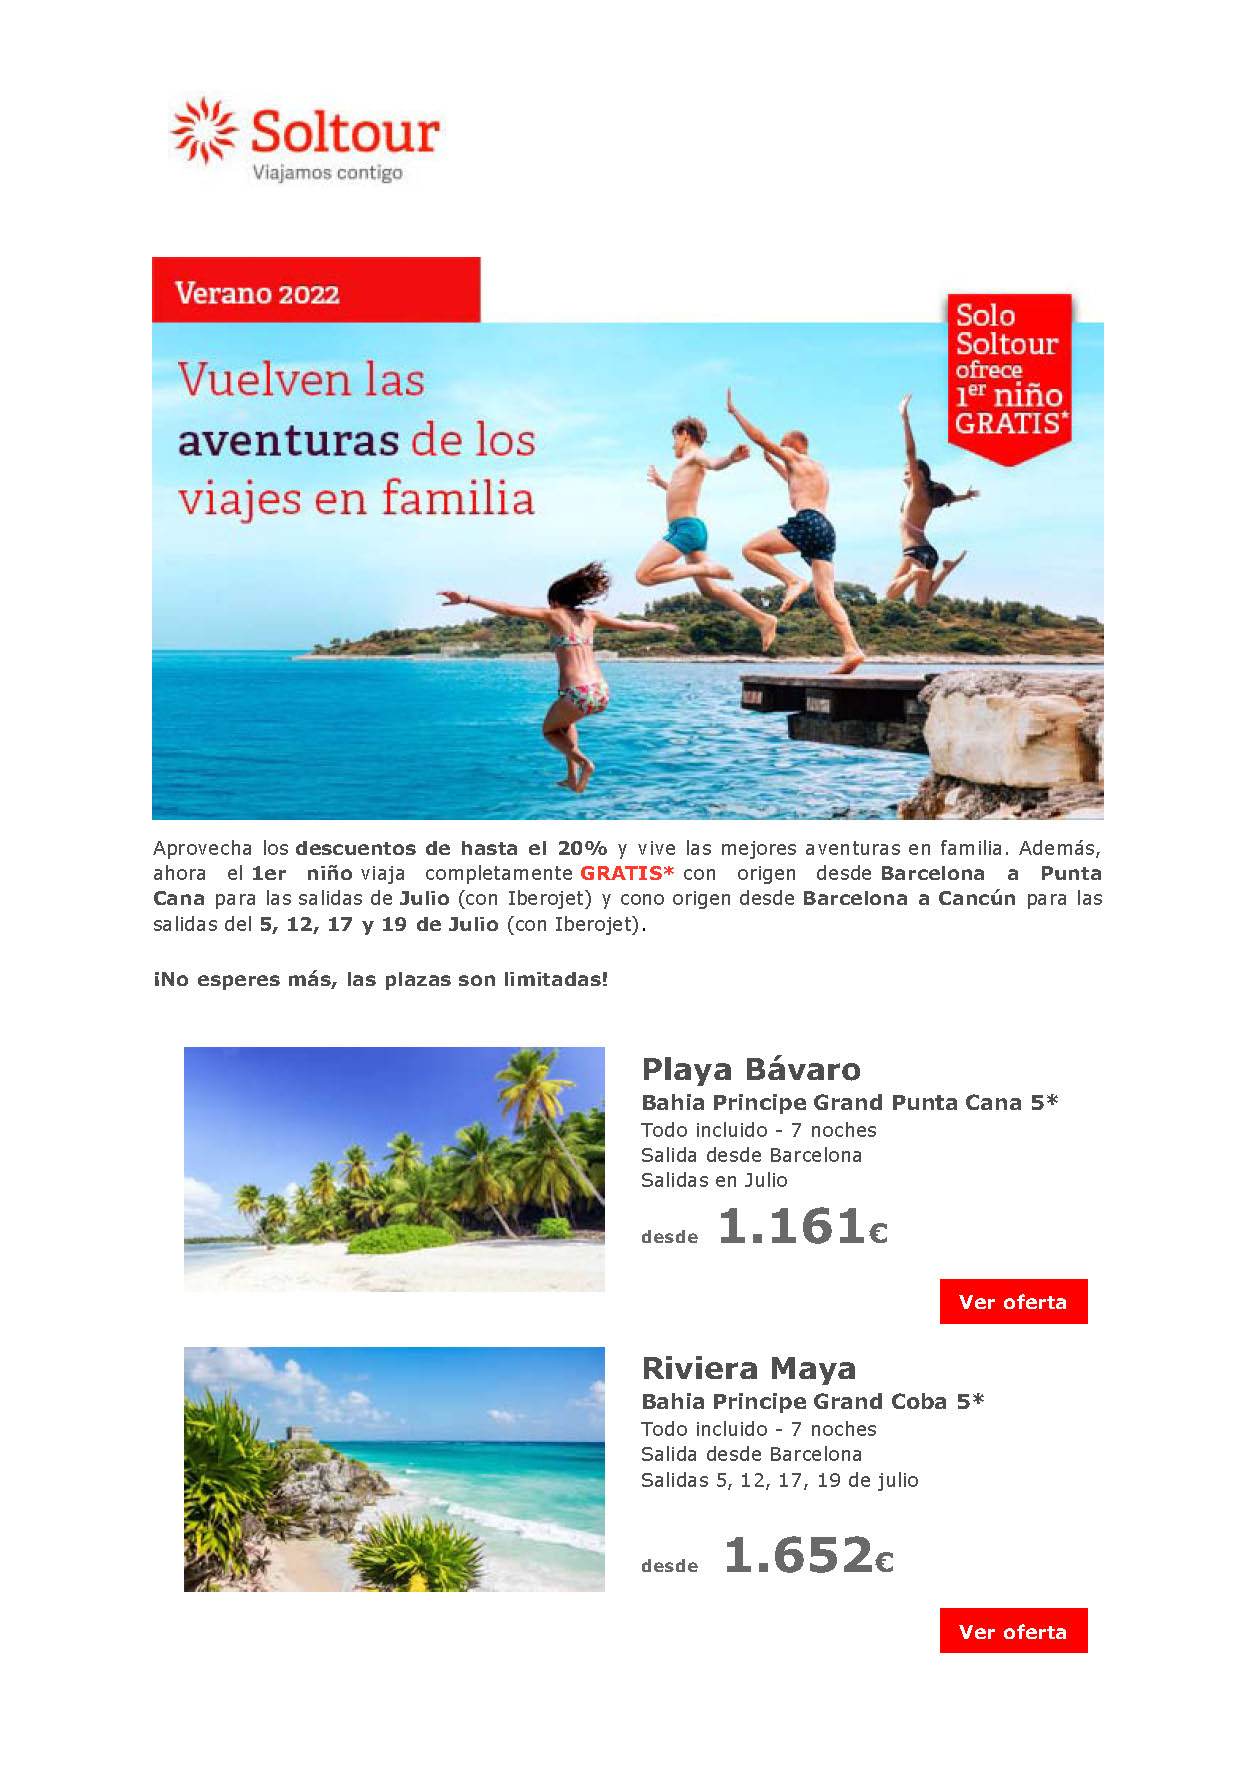 Ofertas Soltour Familias Niño Gratis Playa Bavaro y Riviera Maya Julio 2022 salidas en vuelos directos desde Barcelona